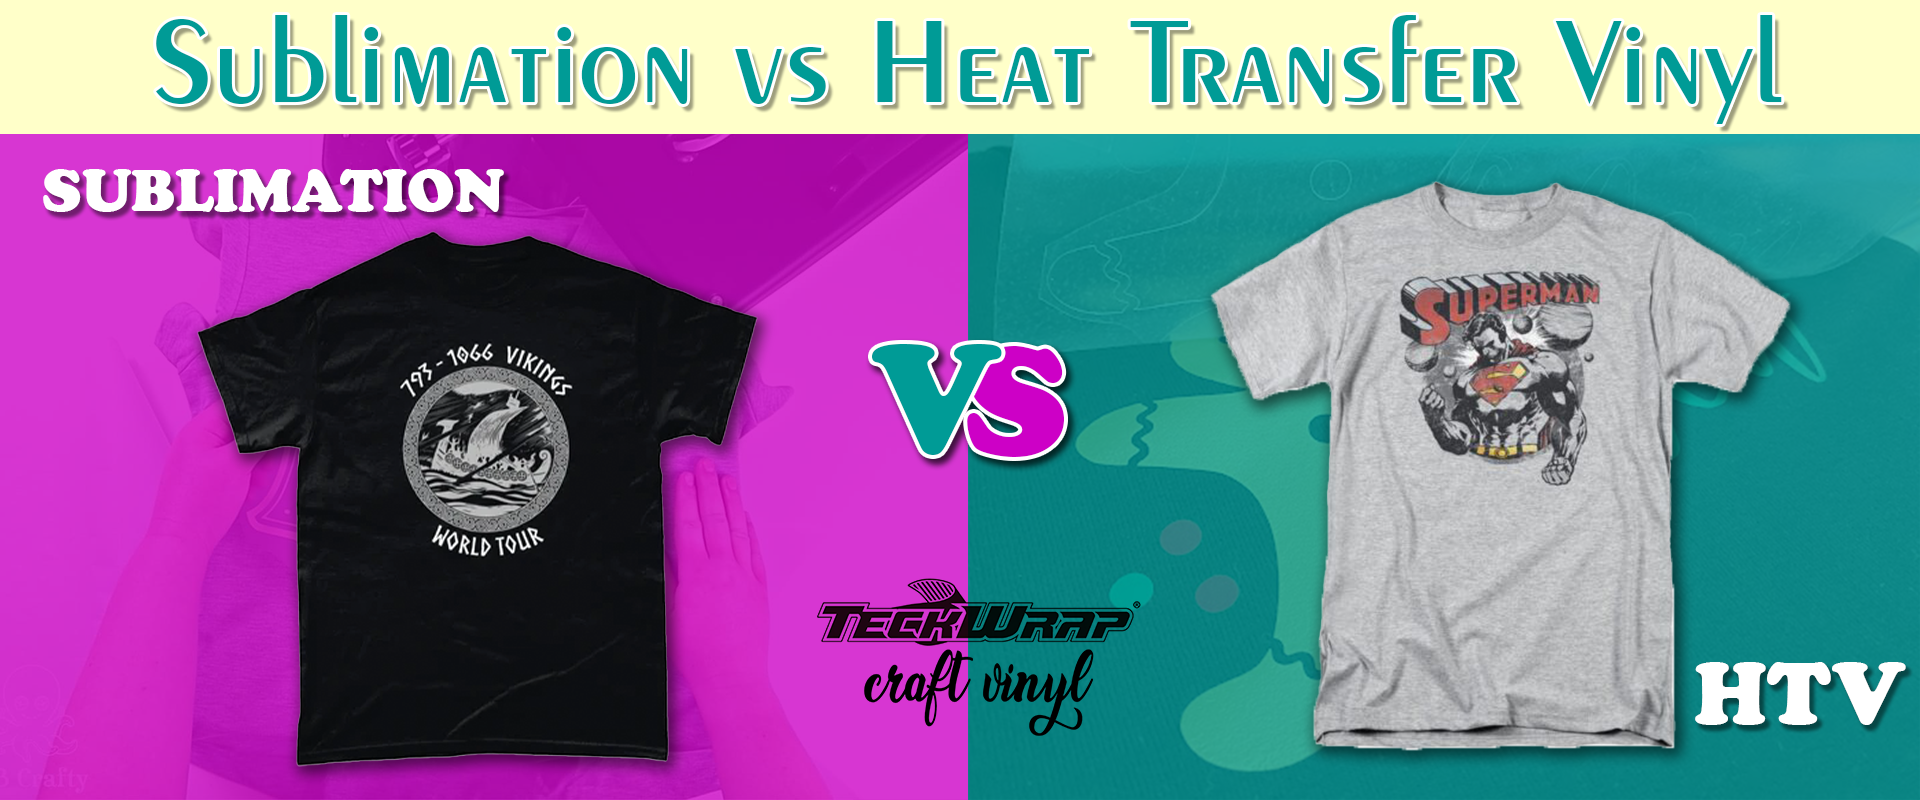 Sublimation vs Heat Transfer Vinyl